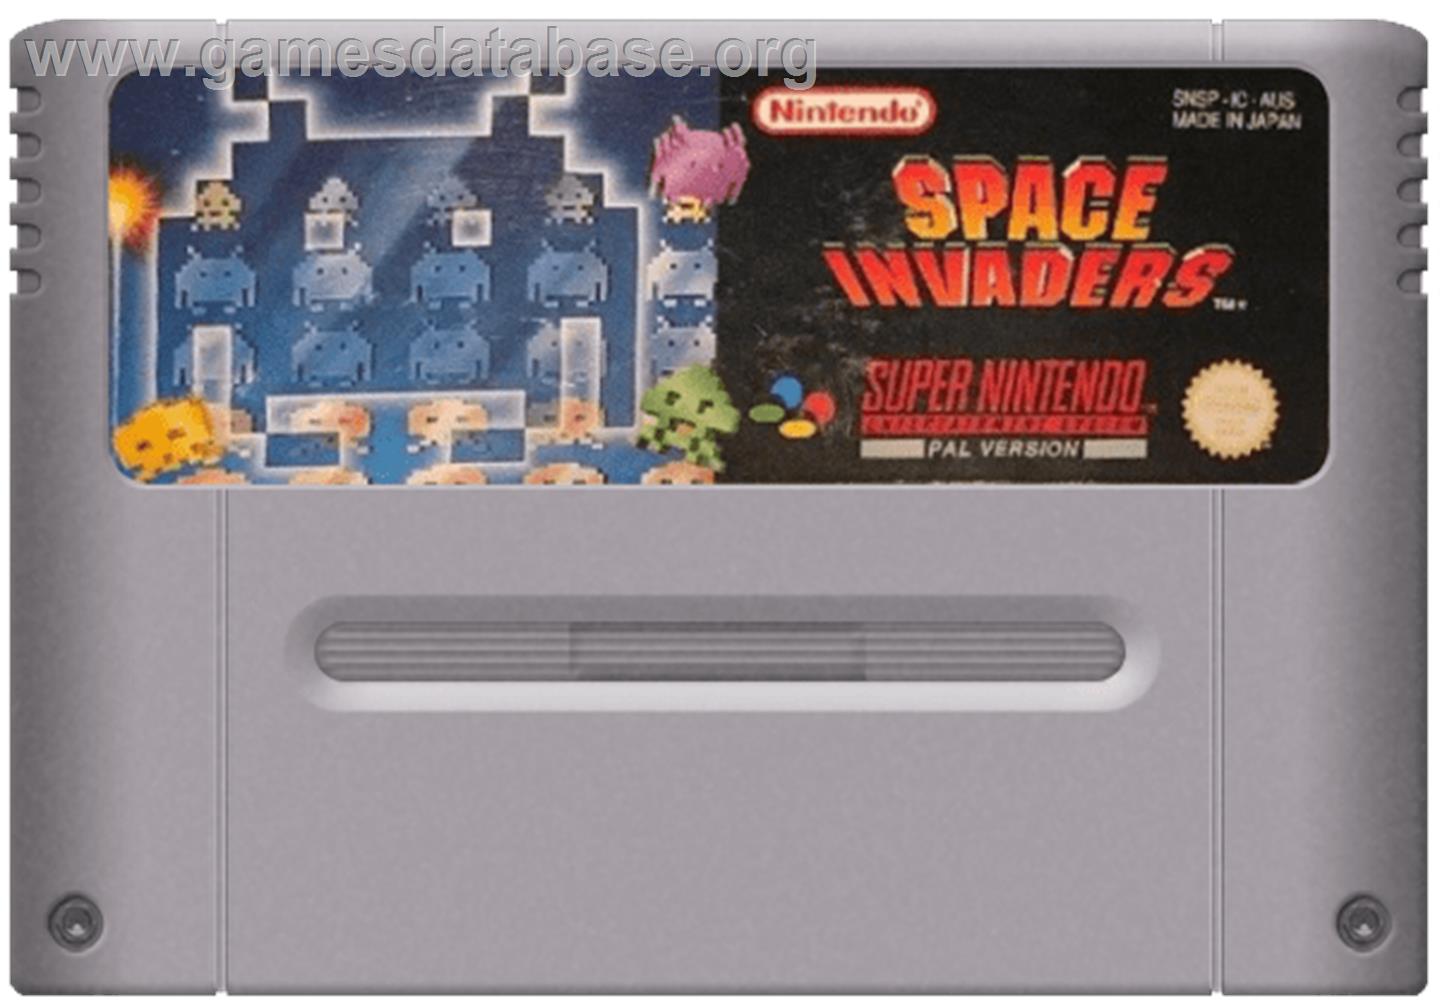 Space Invaders - Nintendo SNES - Artwork - Cartridge